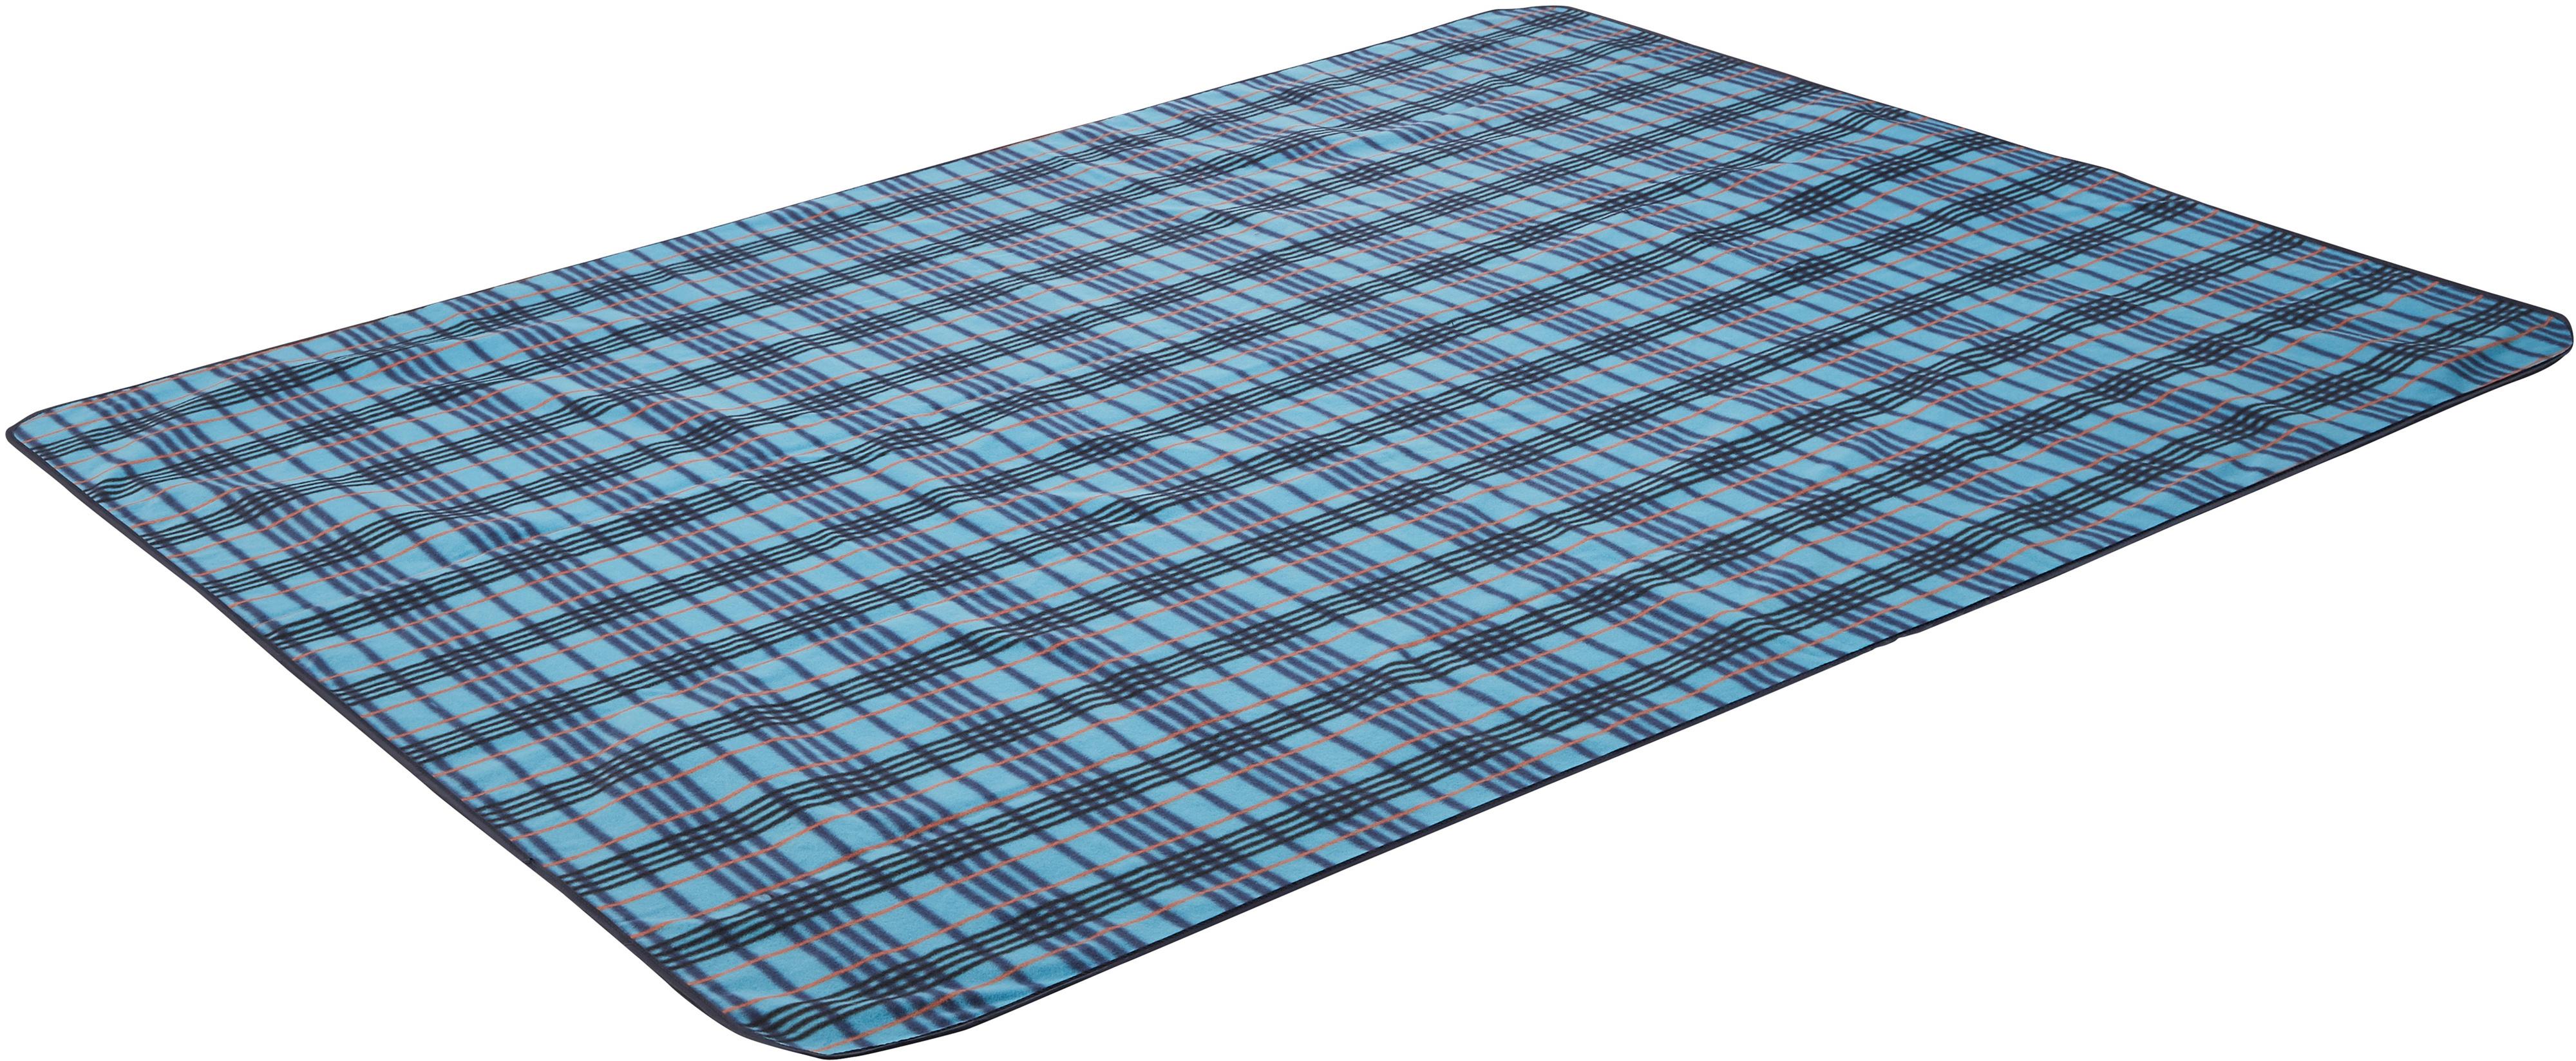 McKinley Camping-Decke Picnic Rug Striped Decke bluepetrol im